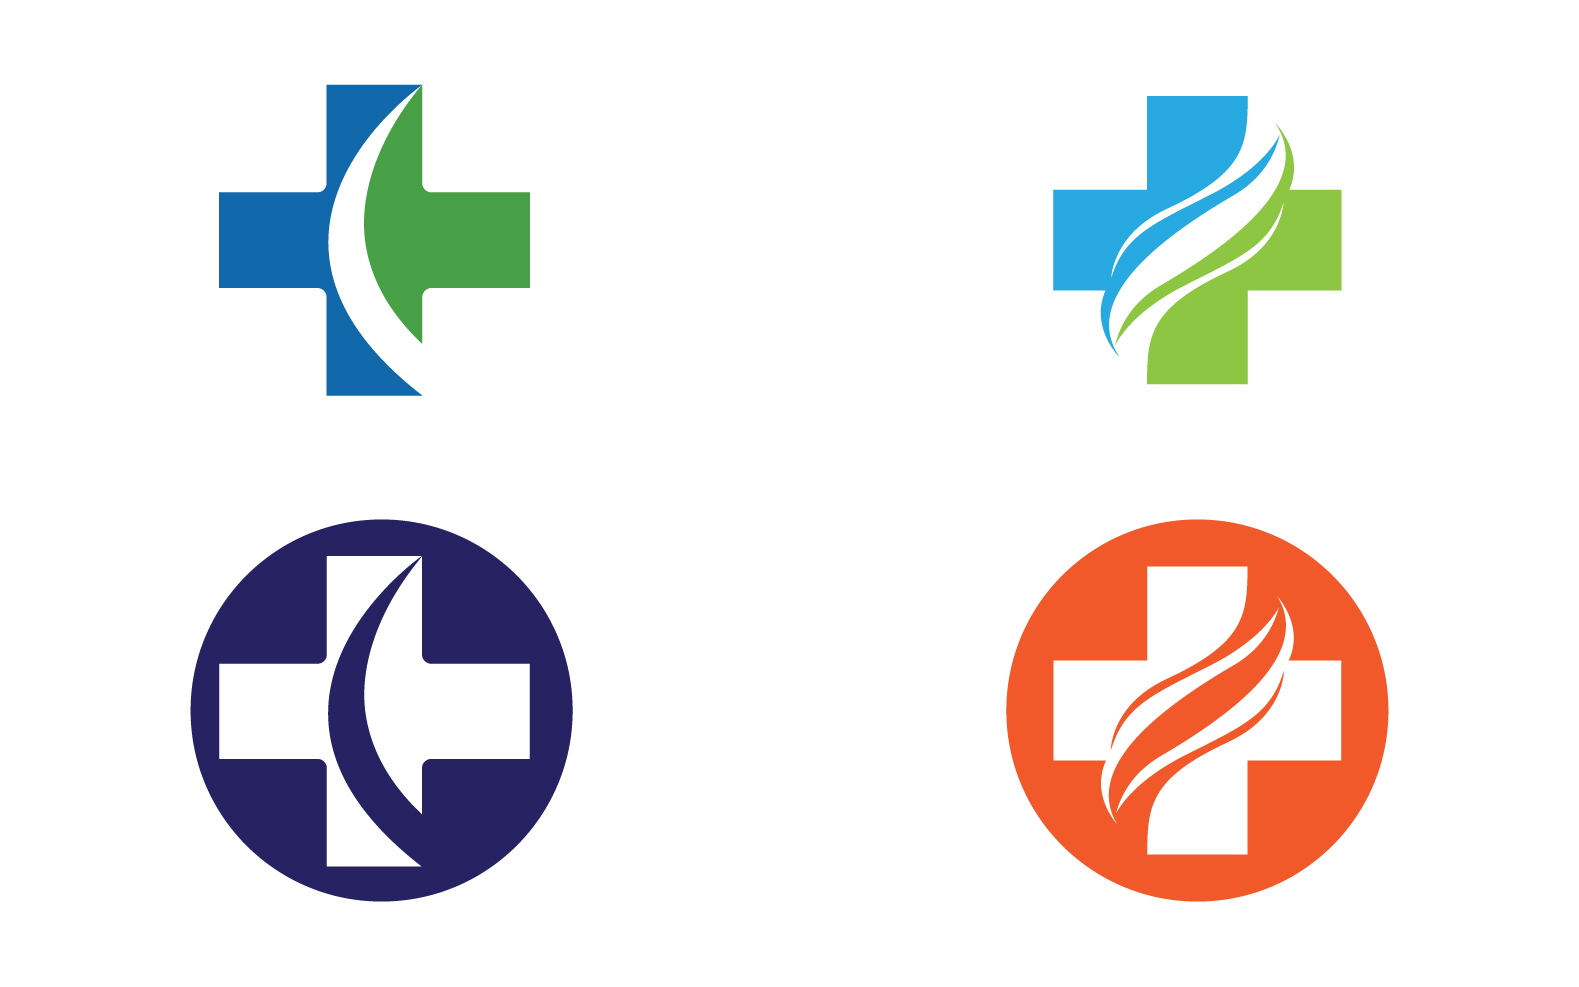 Medical cross Hospital logo vector symbol design v18